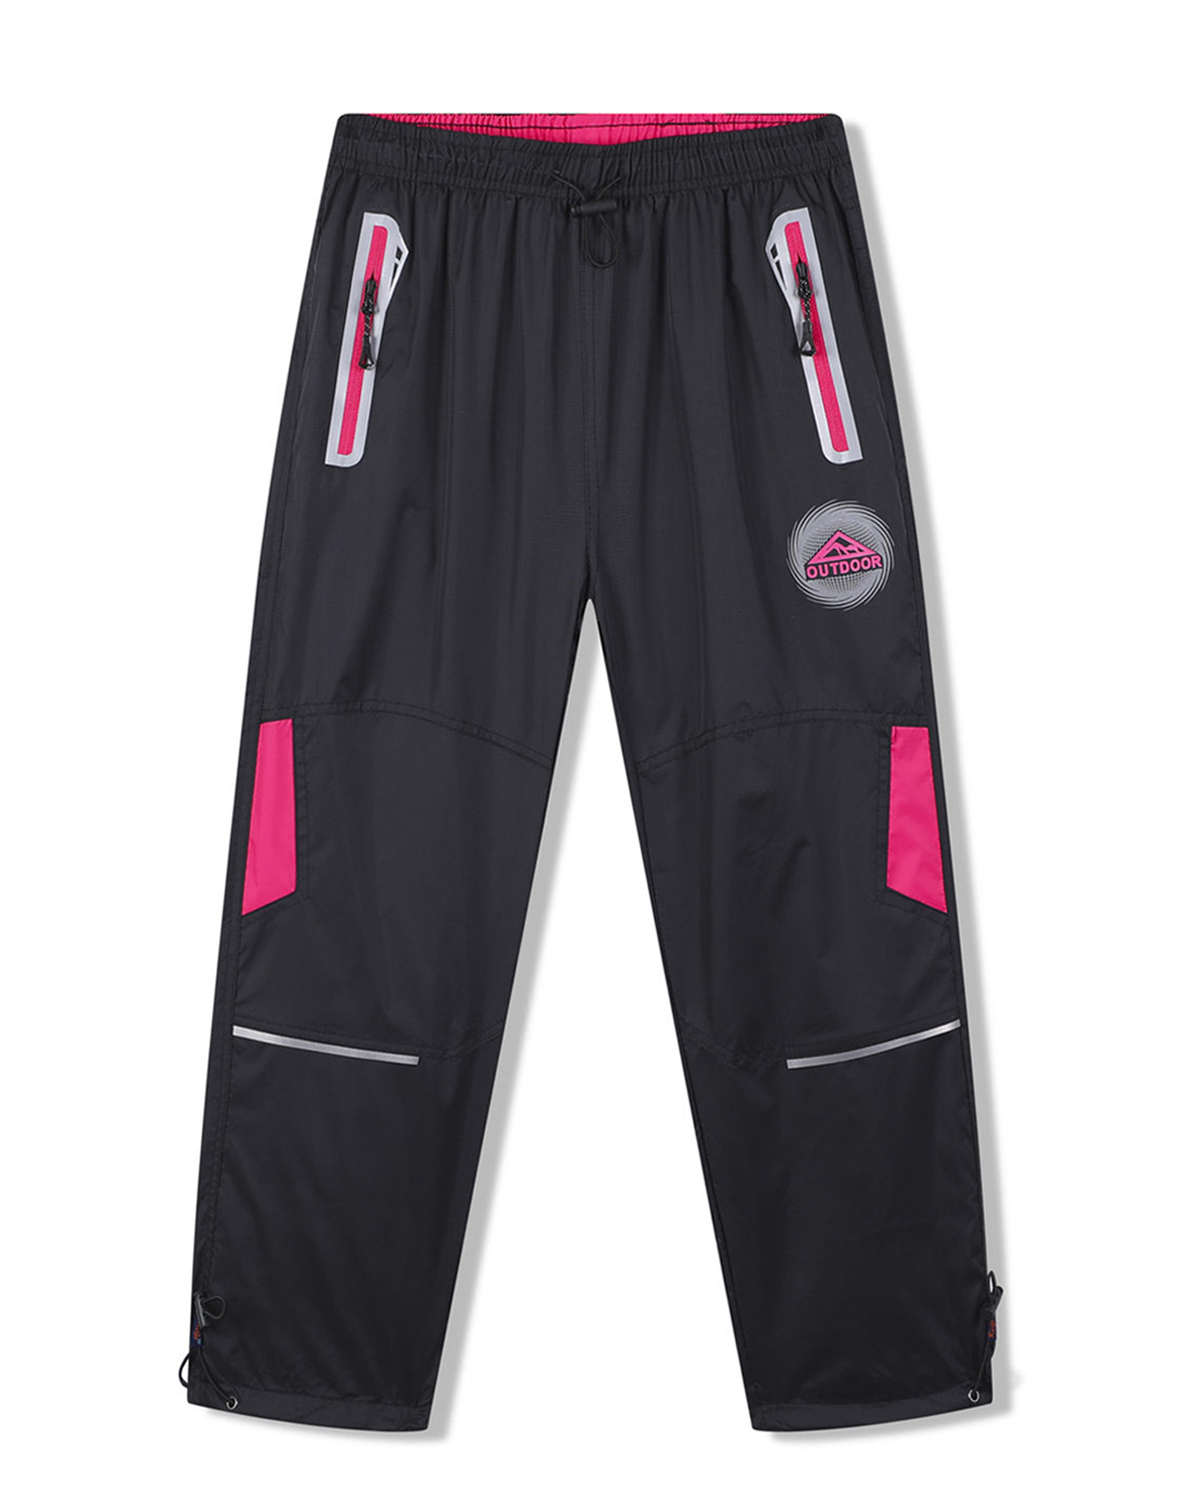 Dívčí šusťákové kalhoty - KUGO SK7751, černá / růžové zipy Barva: Černá, Velikost: 116